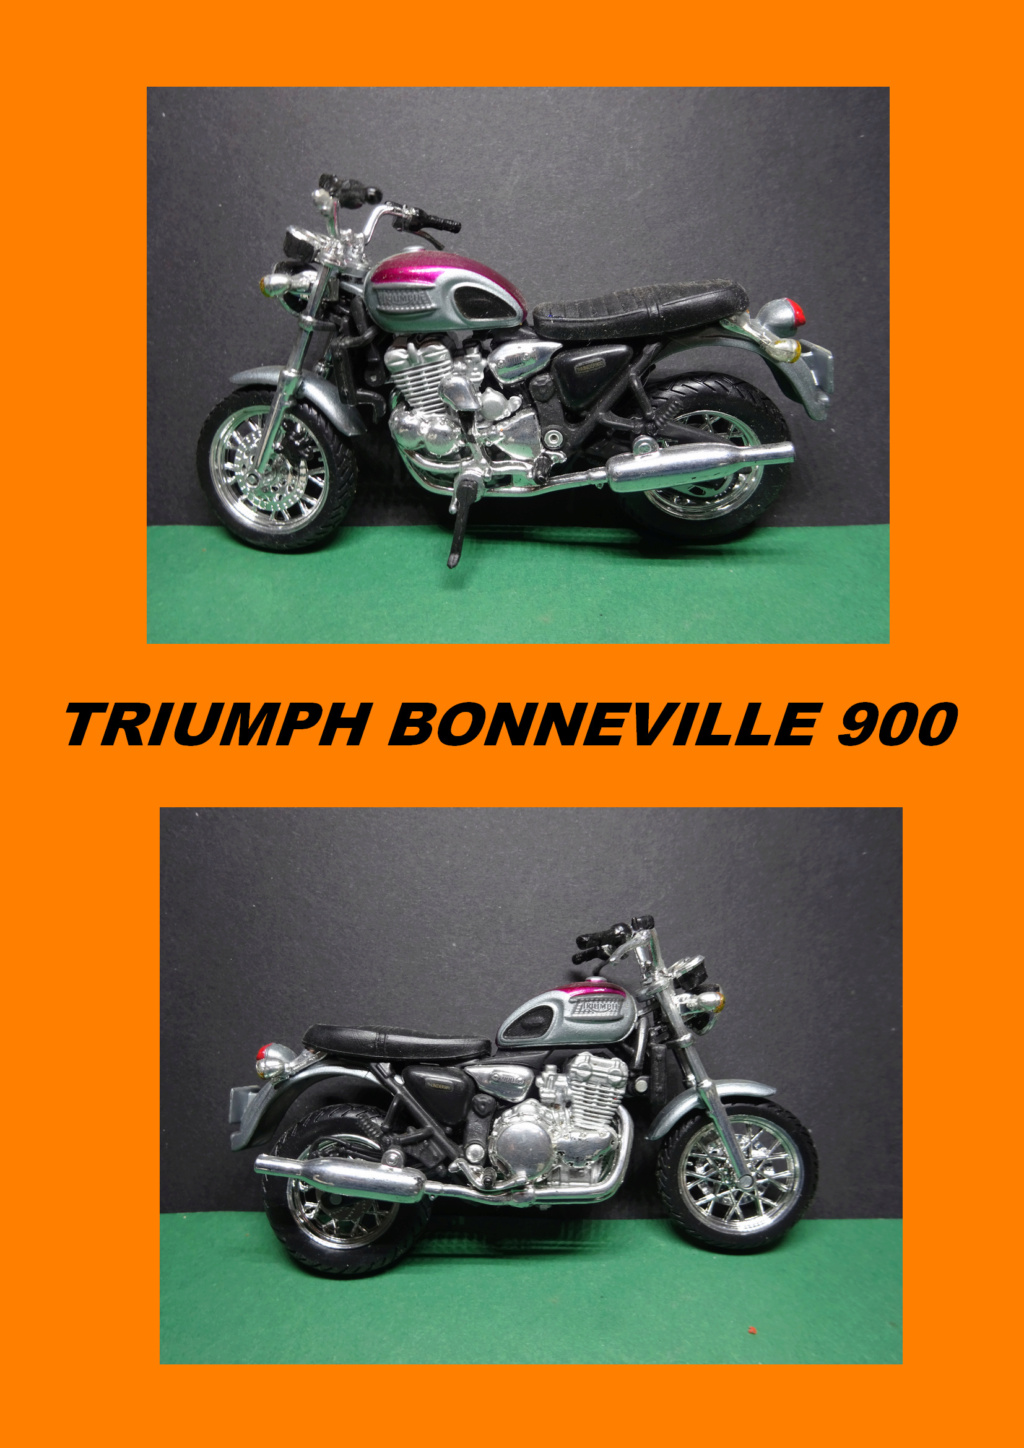 ma collection de motos au 1/18 moto de série en zamac - Page 4 012_bm19